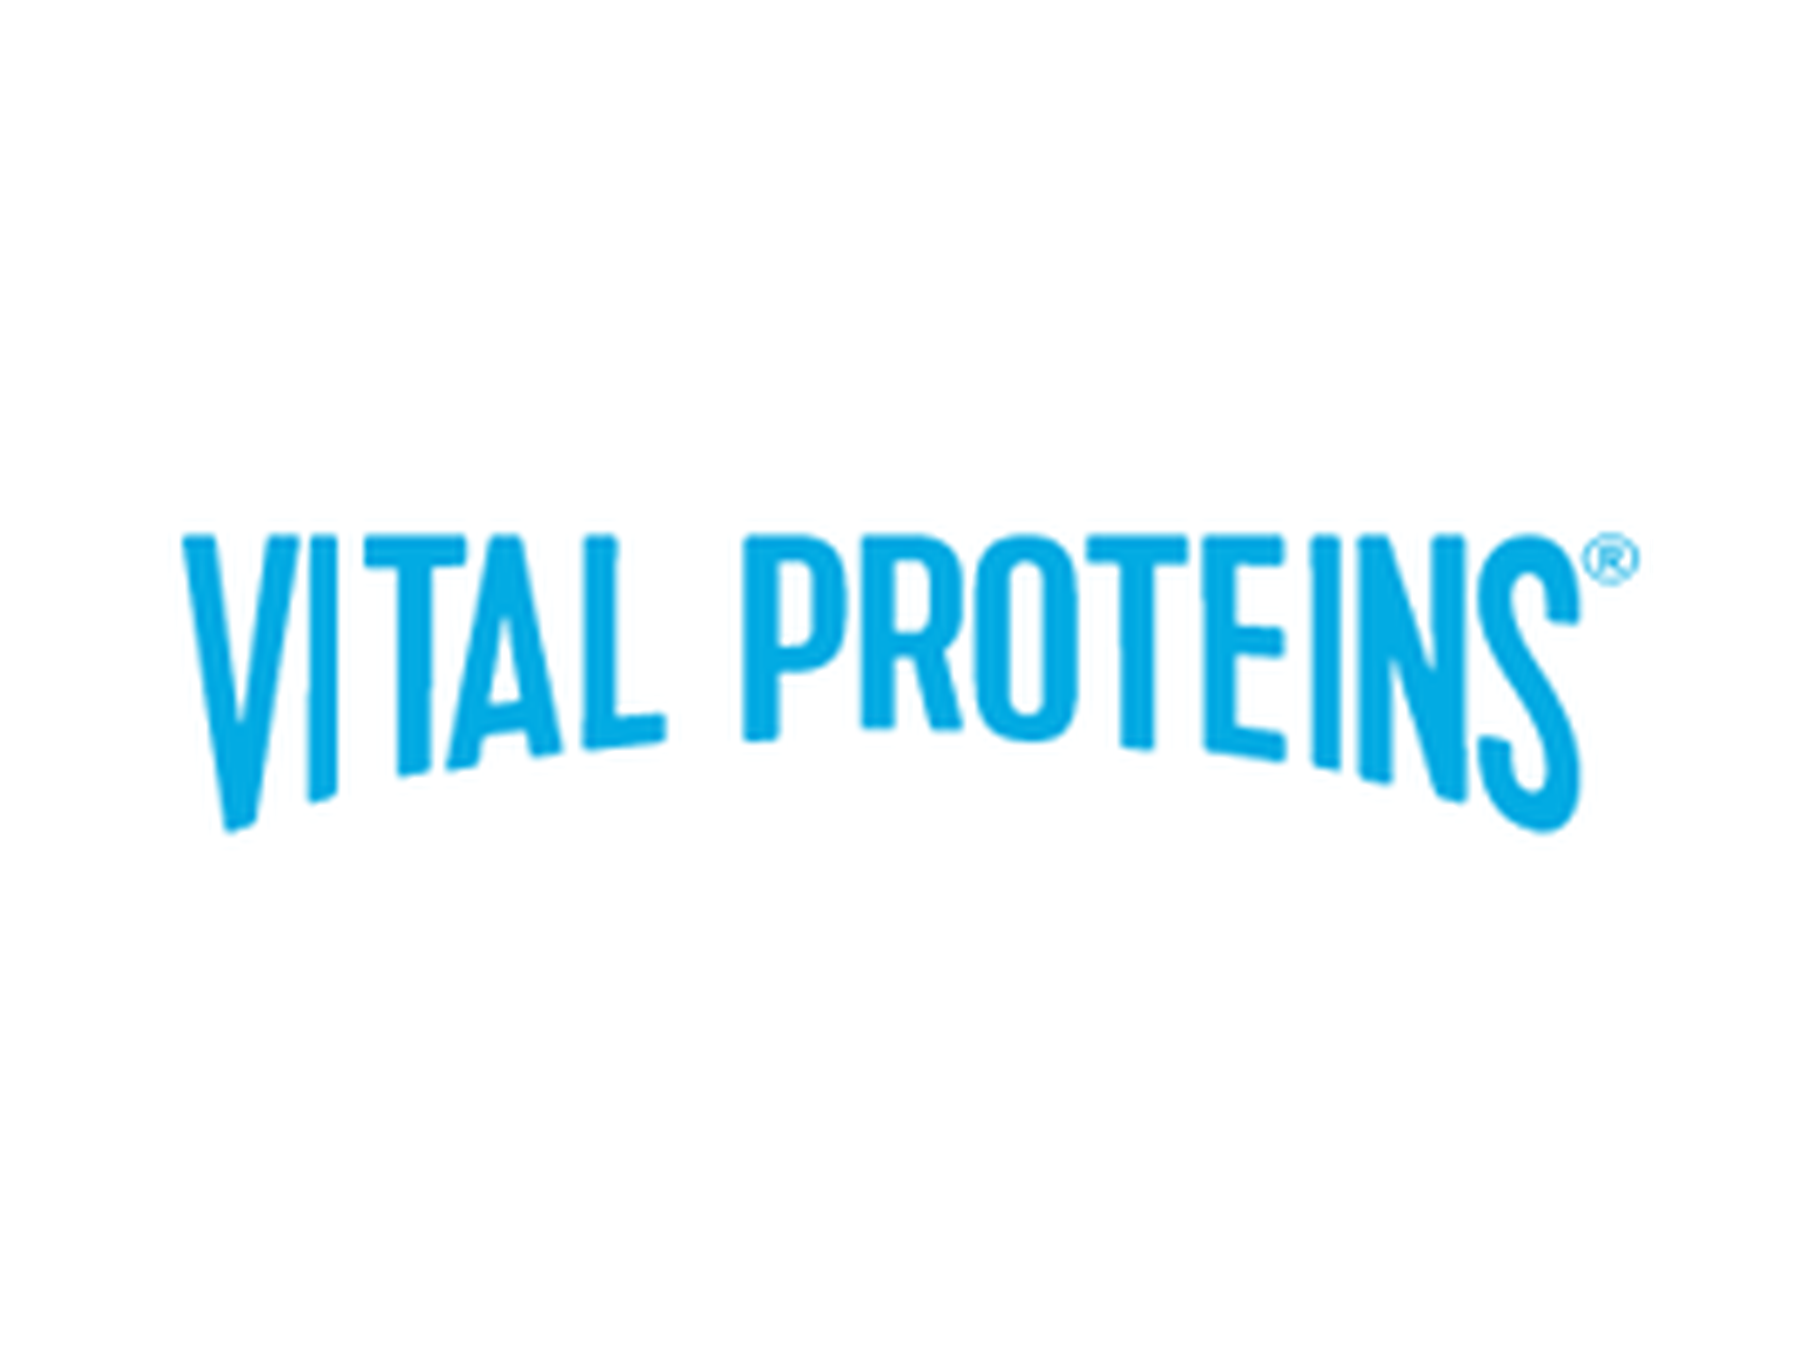 Vital Proteins kortingscode